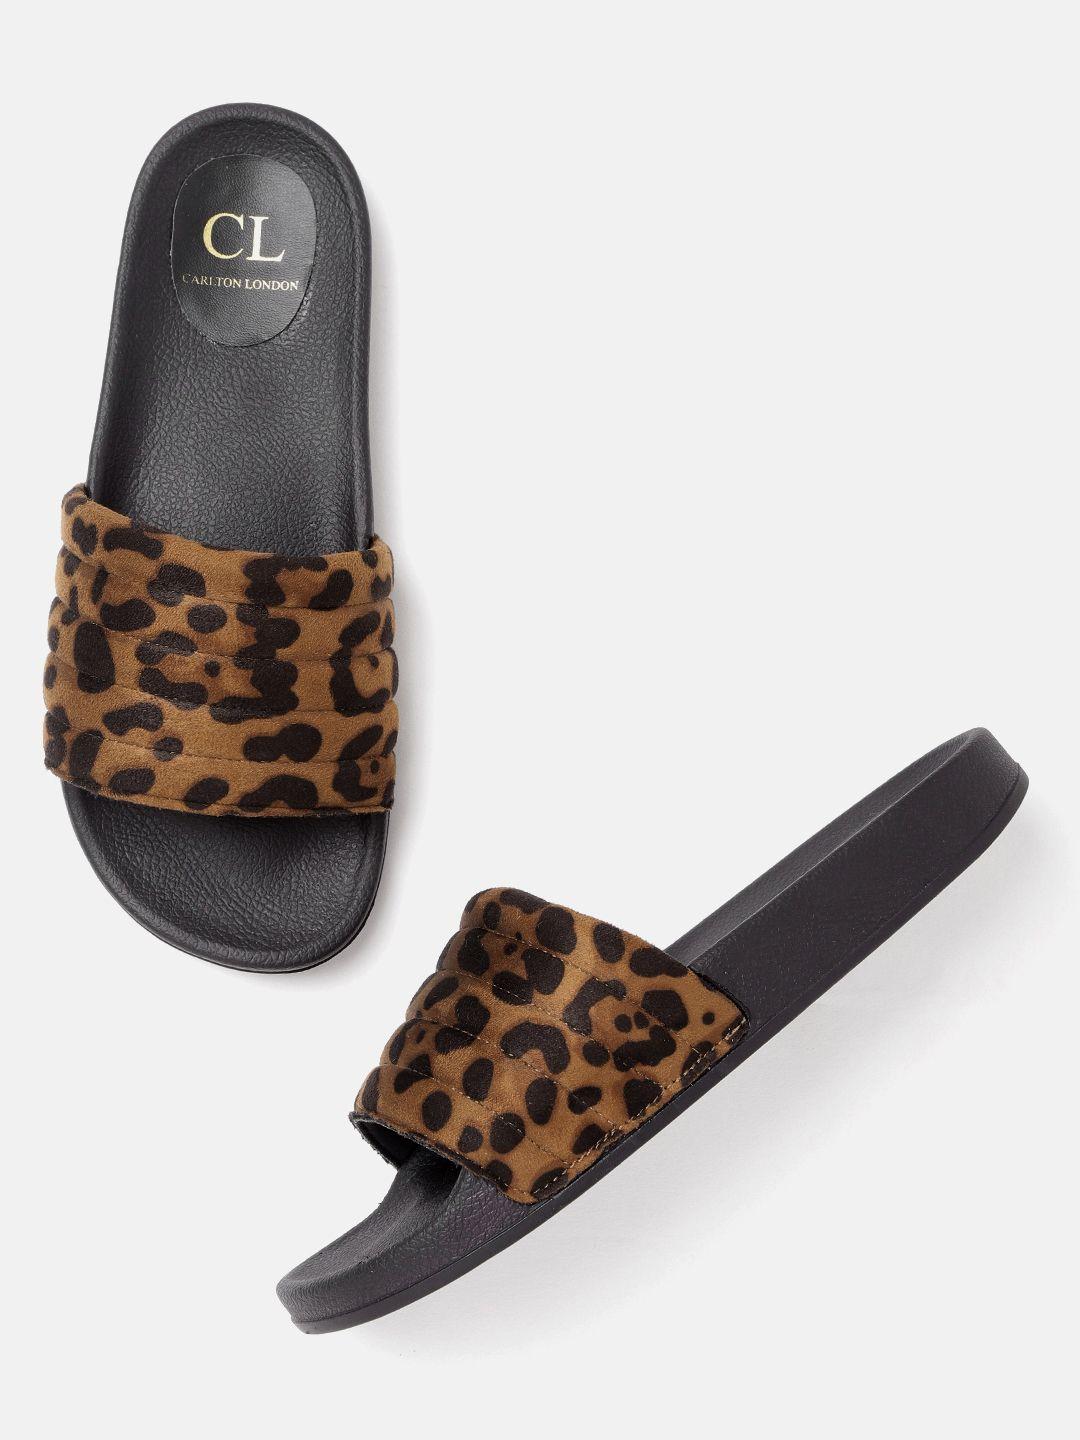 carlton-london-women-brown-&-black-leopard-print-open-toe-flats